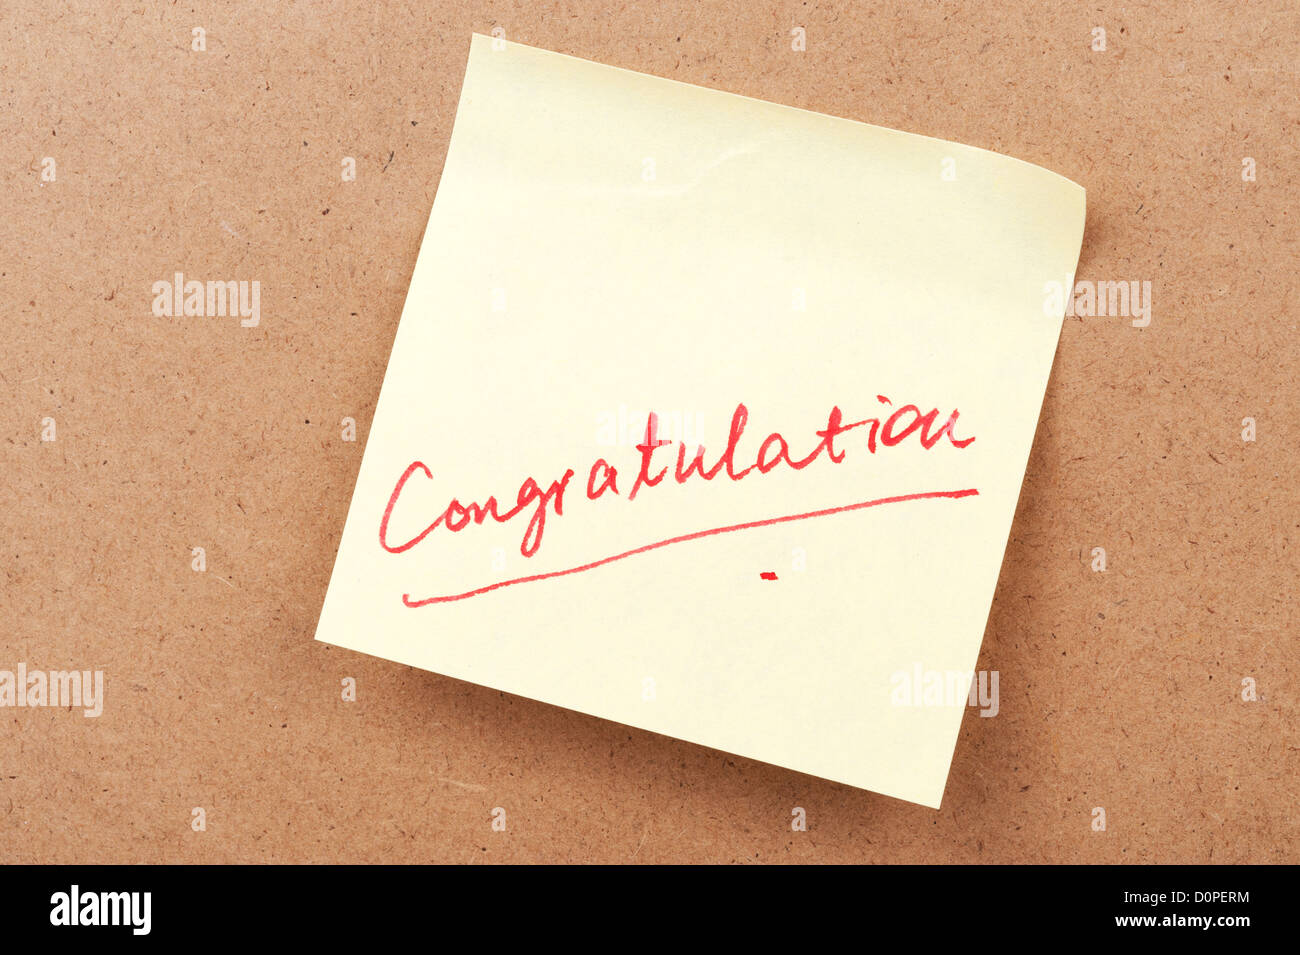 Congratulazioni parola scritta su una nota adesiva Foto Stock